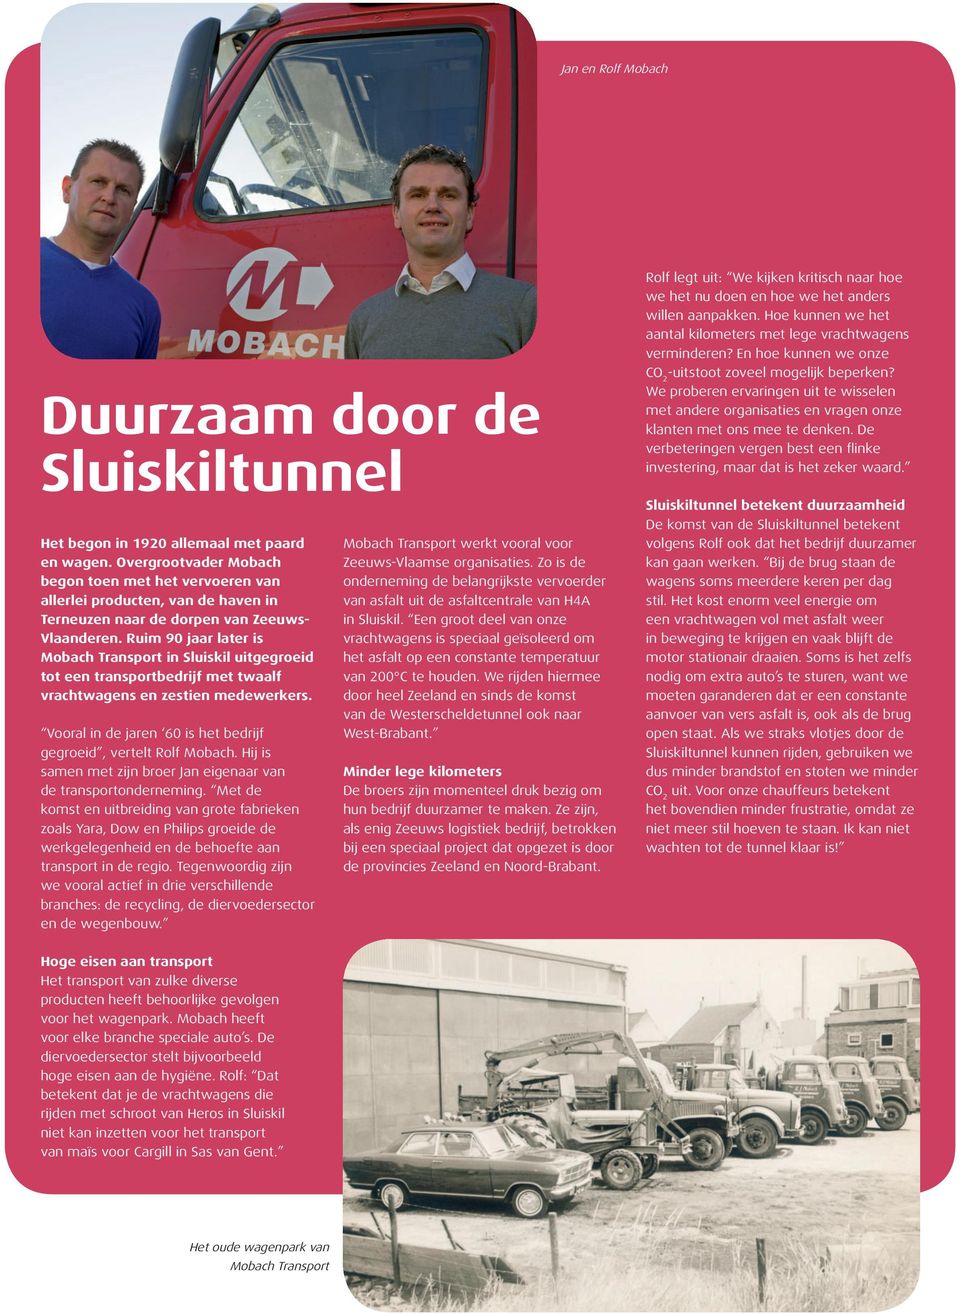 Ruim 90 jaar later is Mobach Transport in Sluiskil uitgegroeid tot een transportbedrijf met twaalf vrachtwagens en zestien medewerkers.